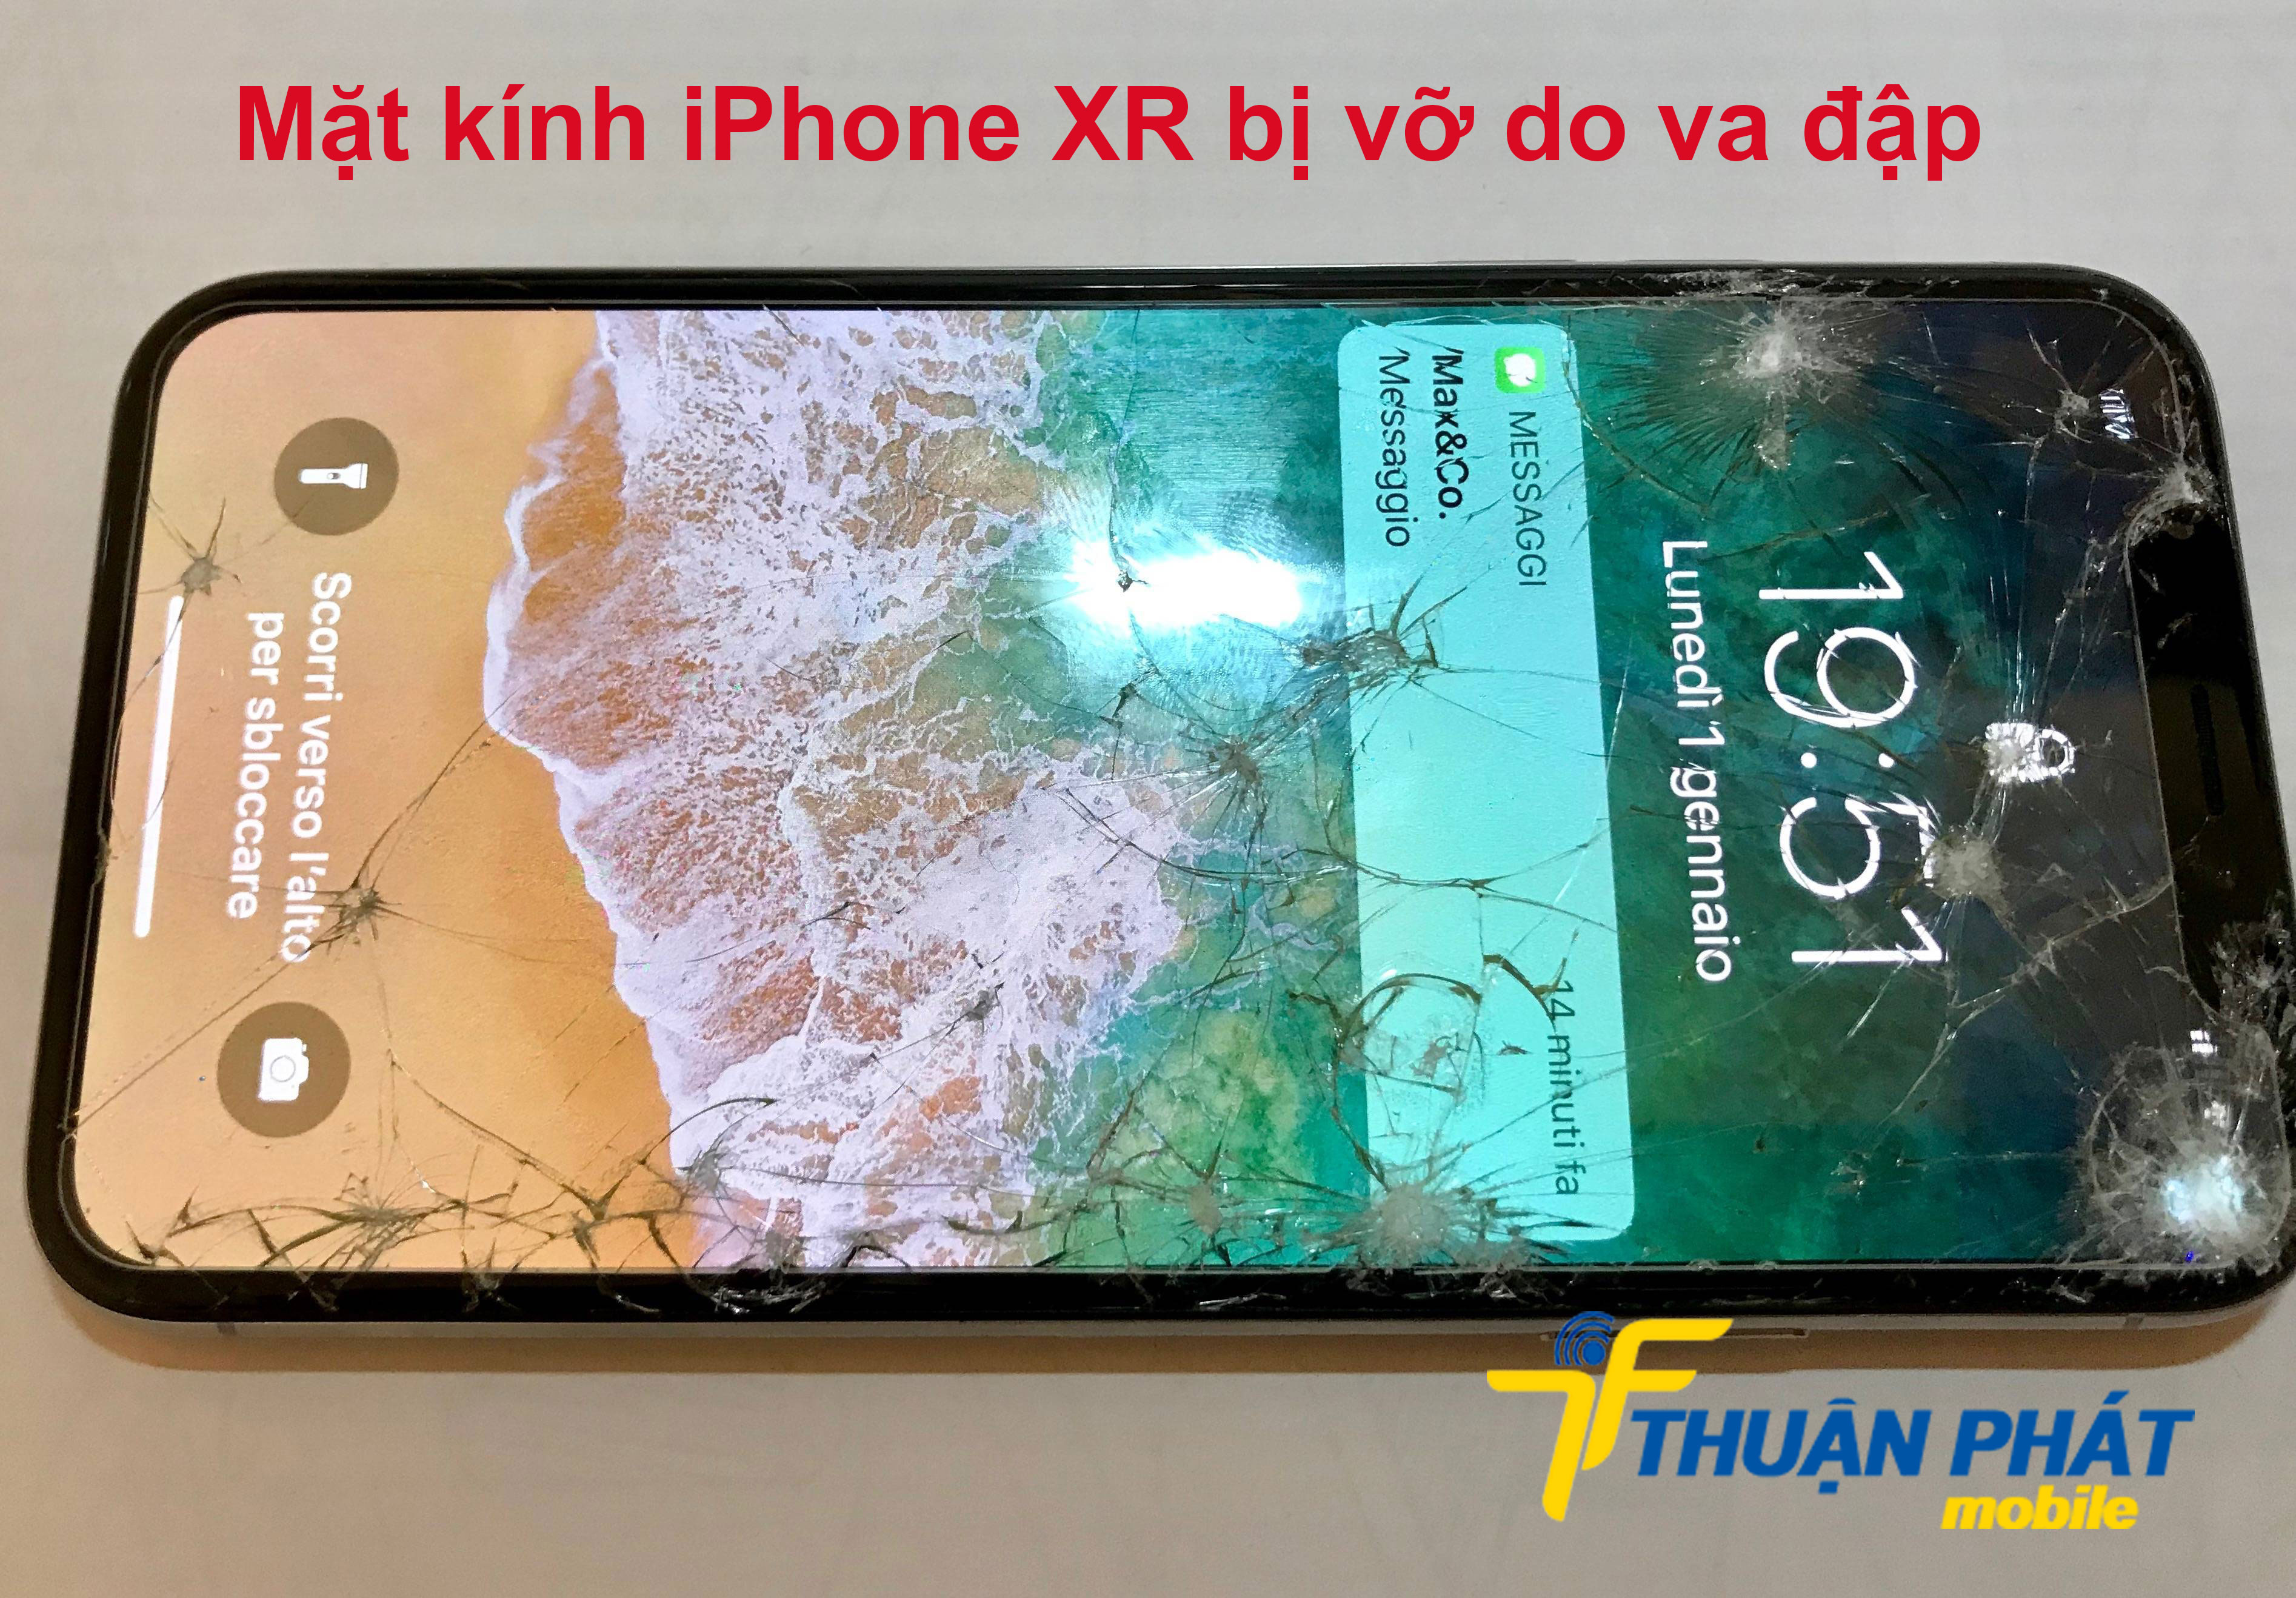 Mặt kính iPhone XR bị vỡ do va đập